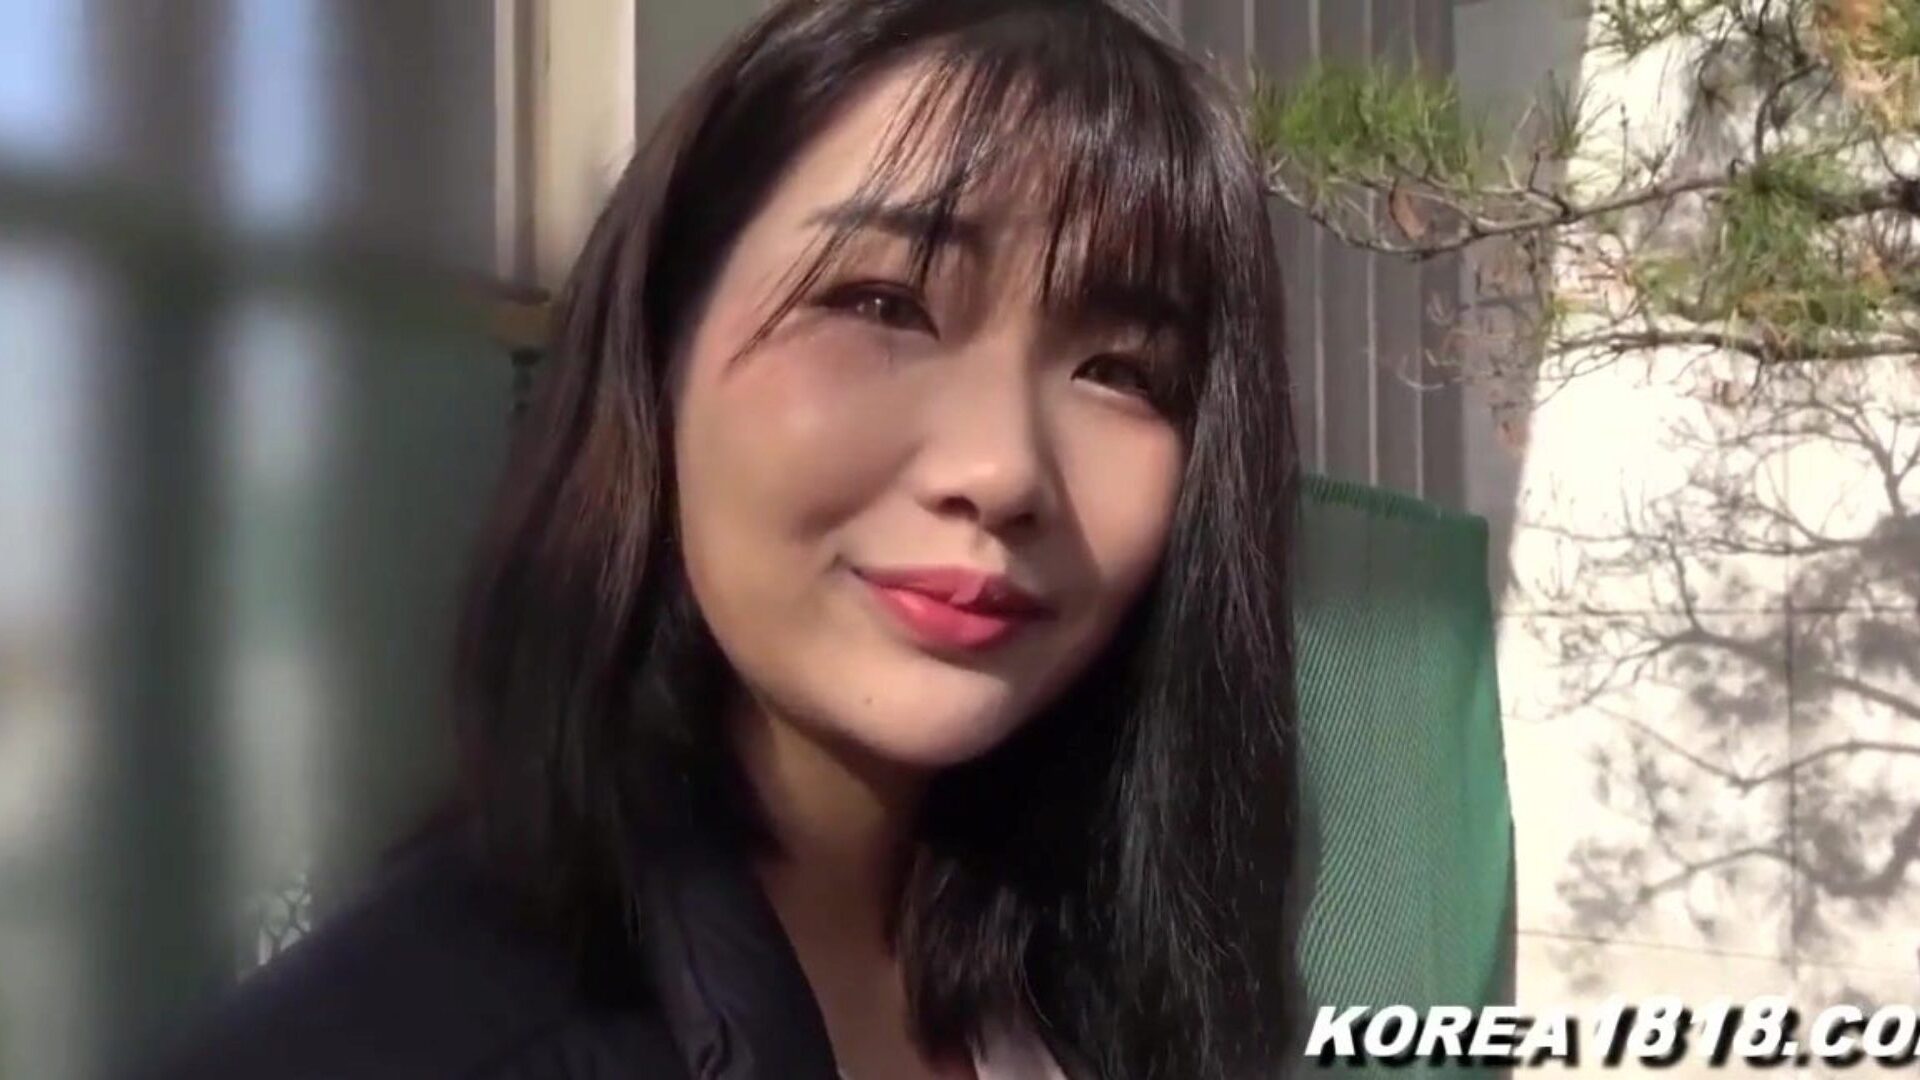 porno coreano super caliente coreano puta consigue masturbar